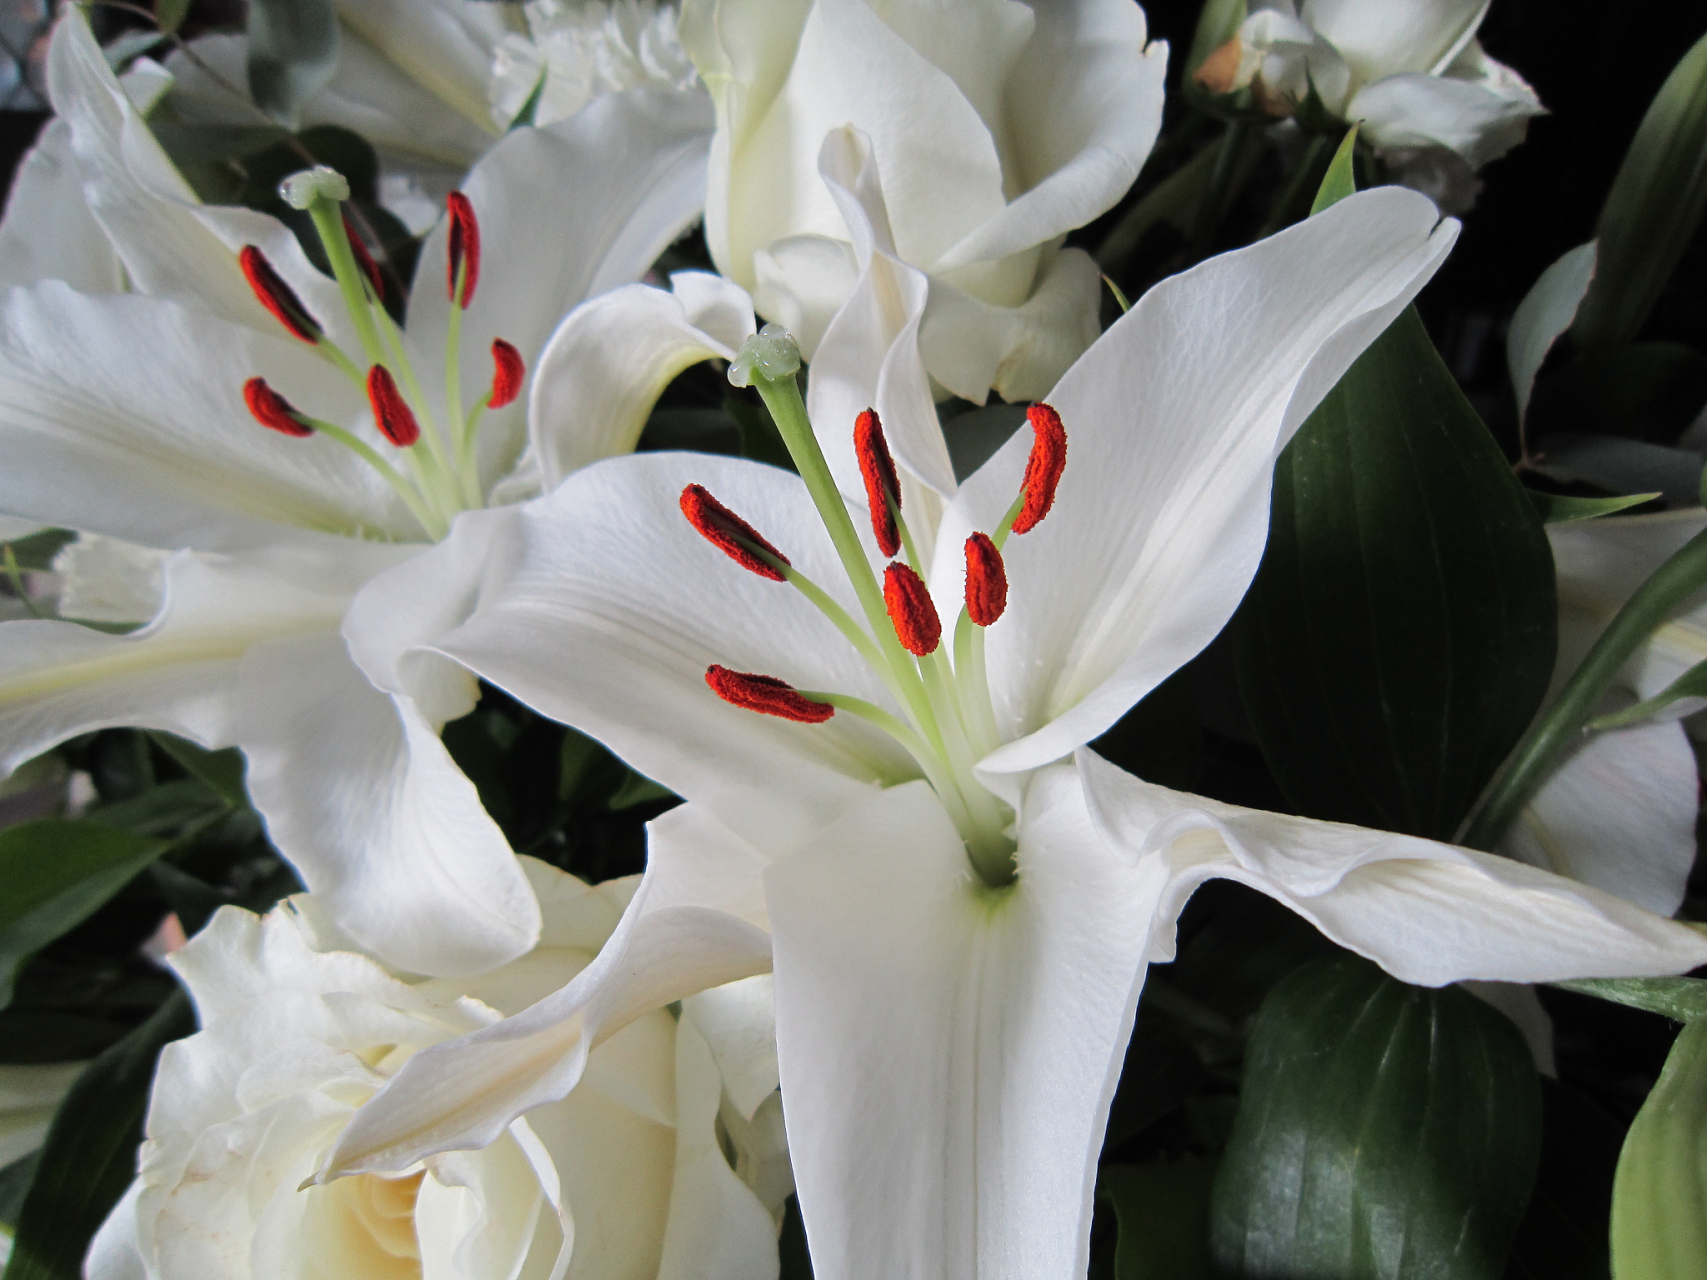 百合花以其独特的魅力吸引着人们的目光,它的形态优雅,花瓣纯净,花蕊